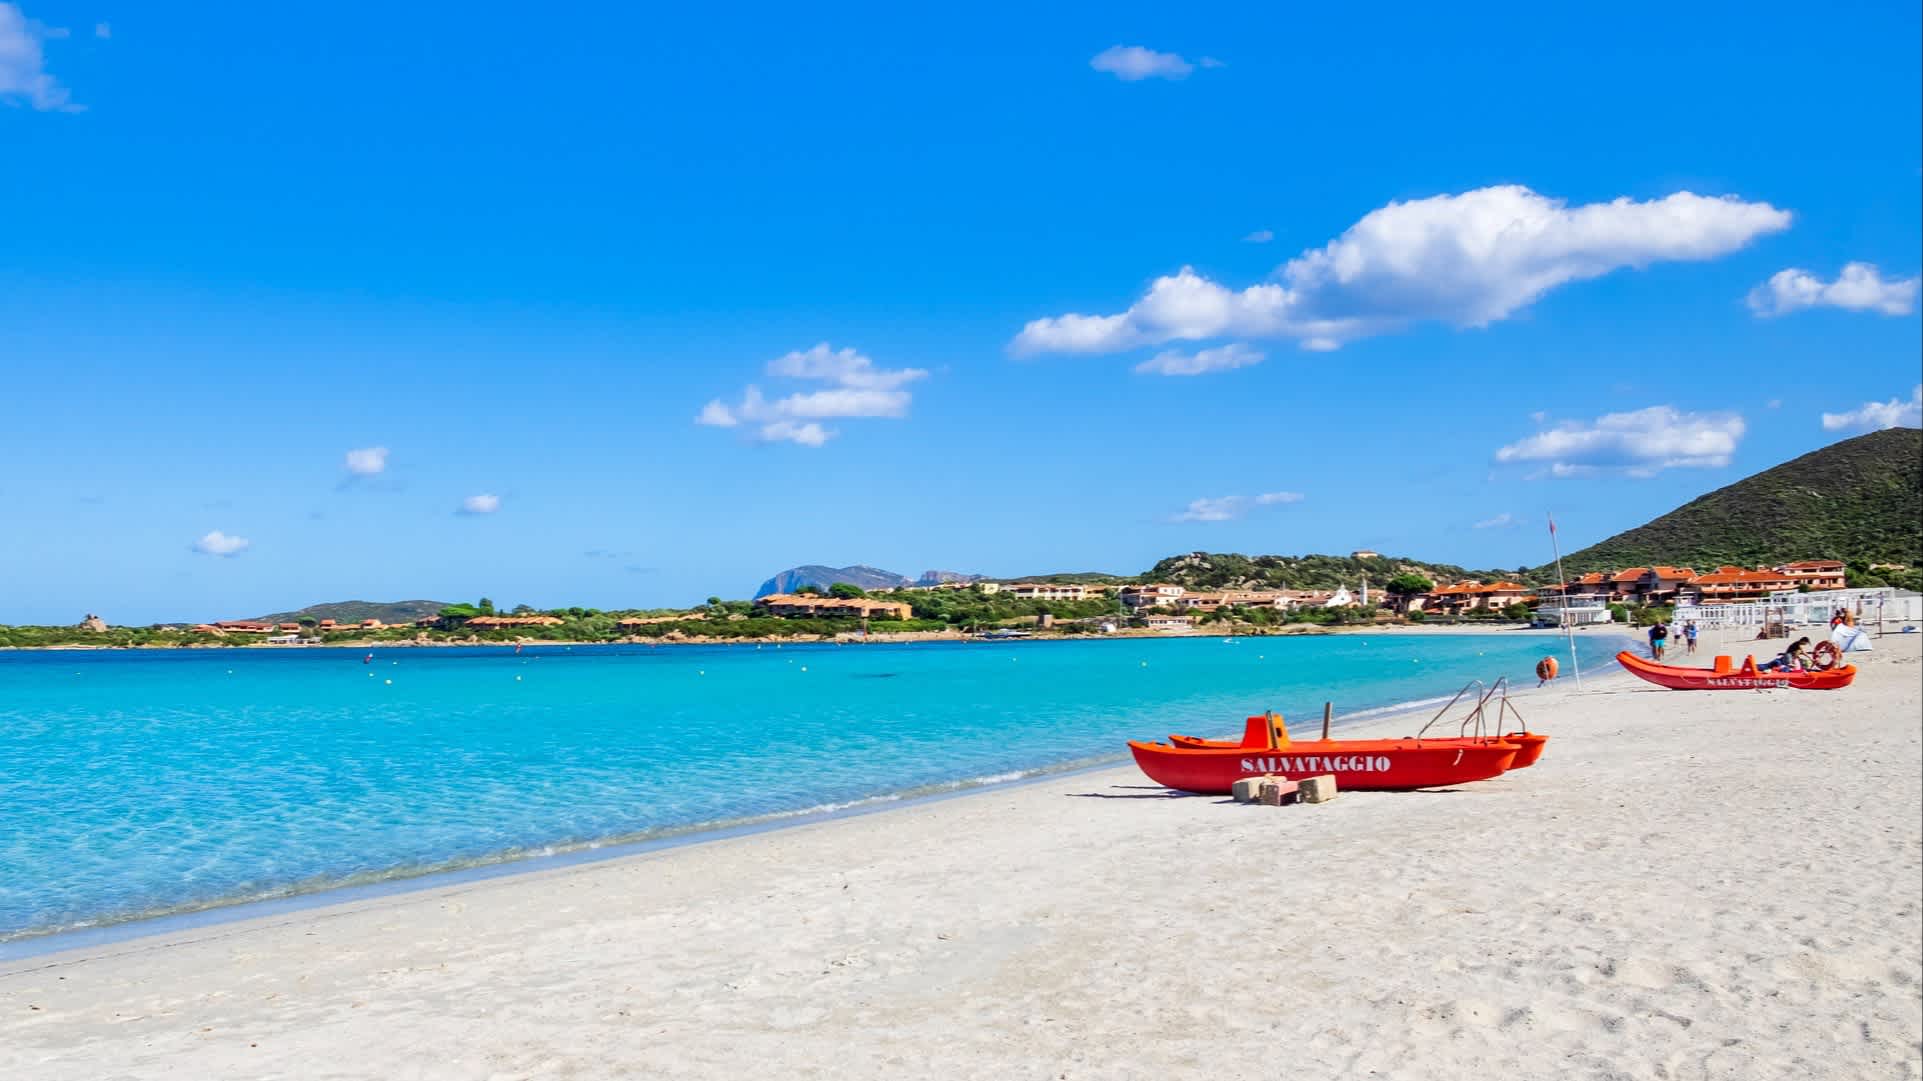 Blick zum Marinella-Strand in Gallura, Sardinien, Italien mit roten Booten am Strand sowie bei purem Sonnenschein.